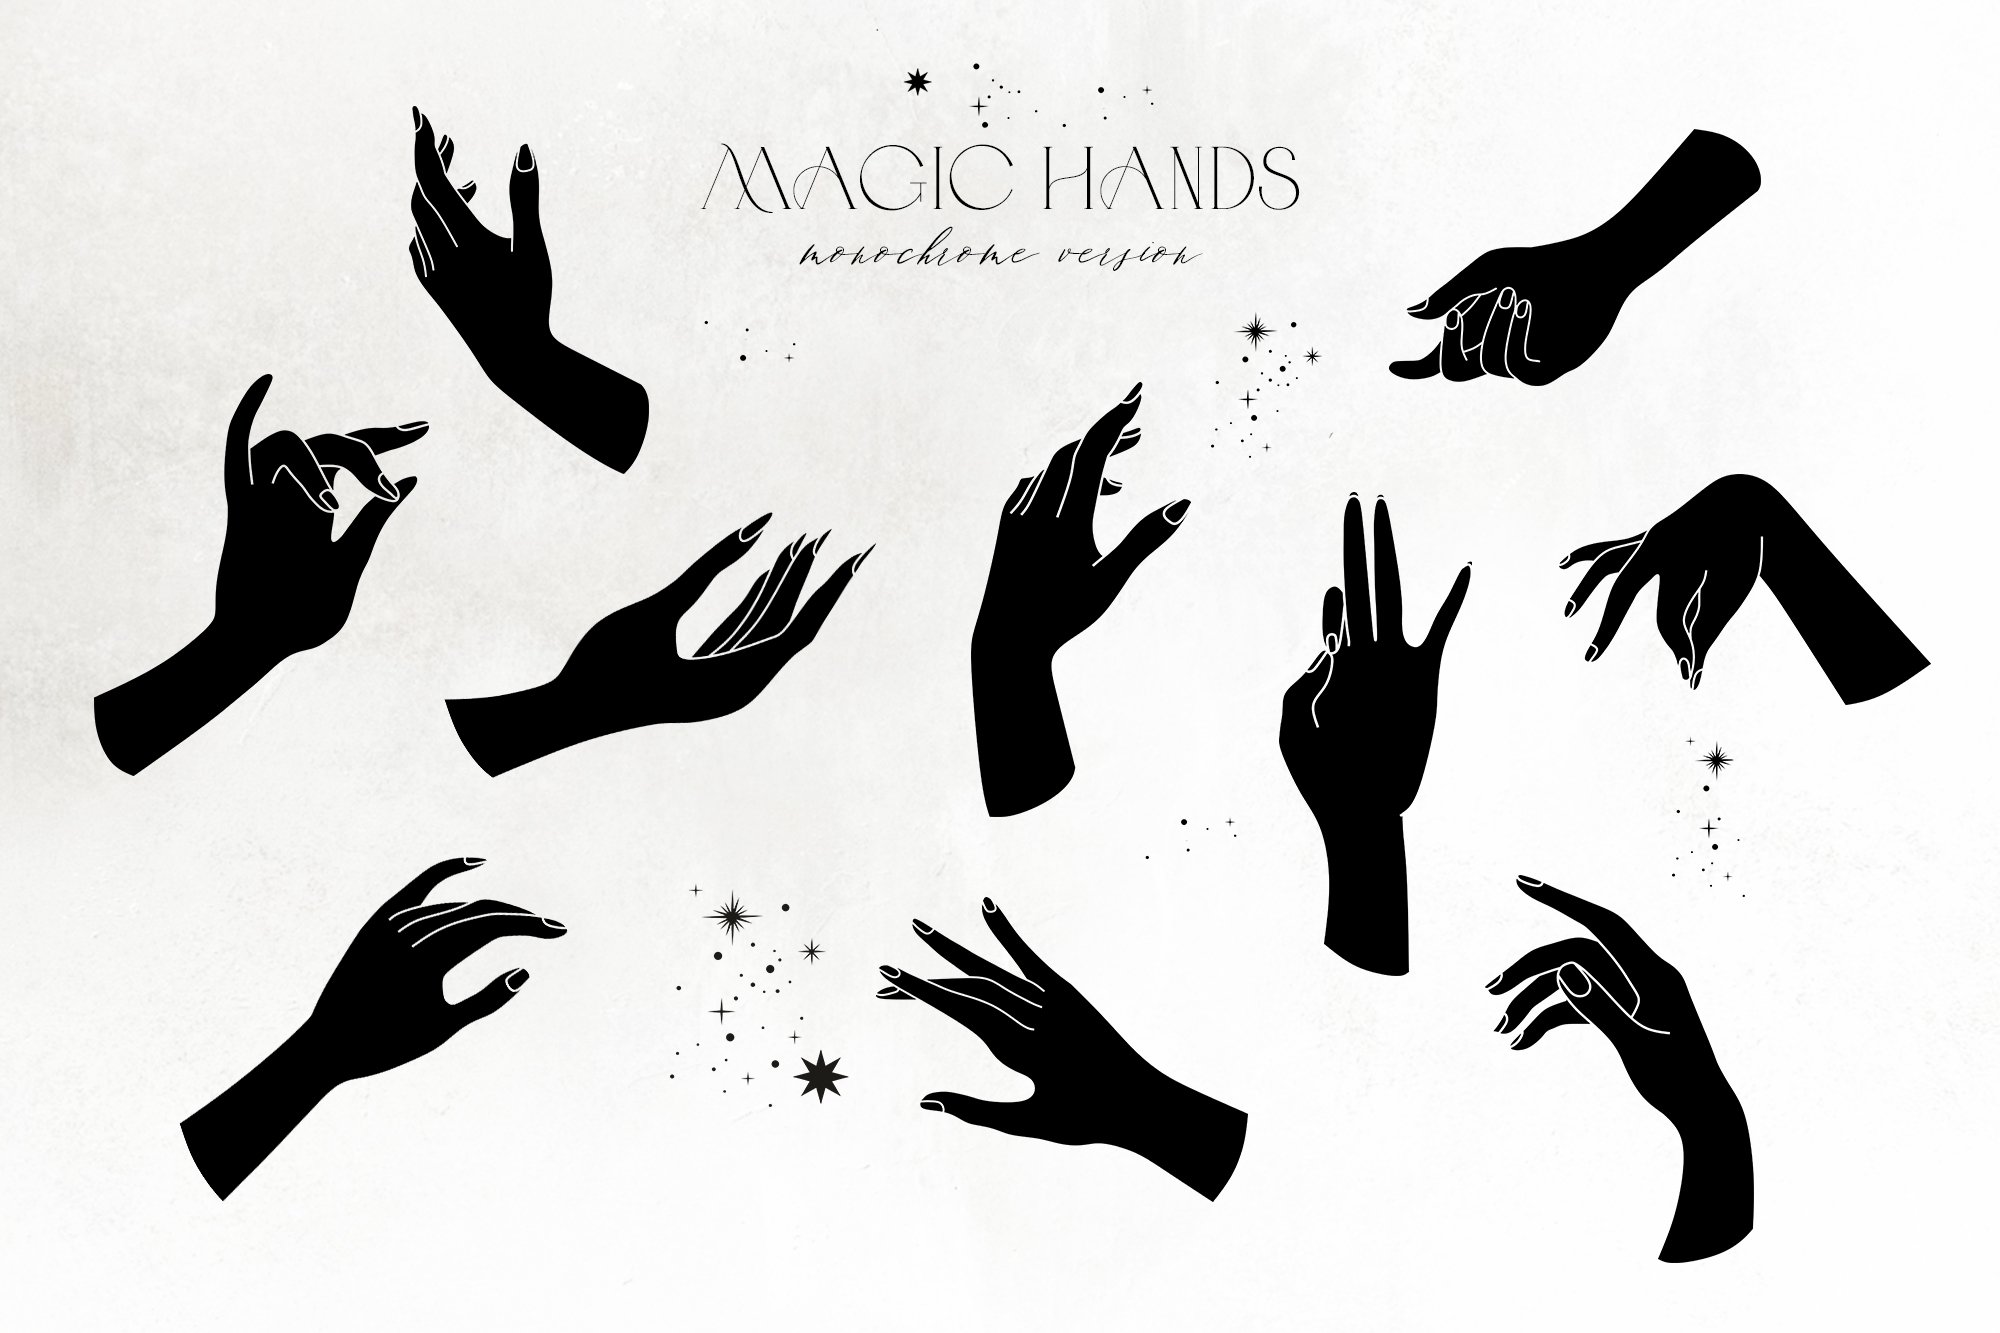 Black magic hands.